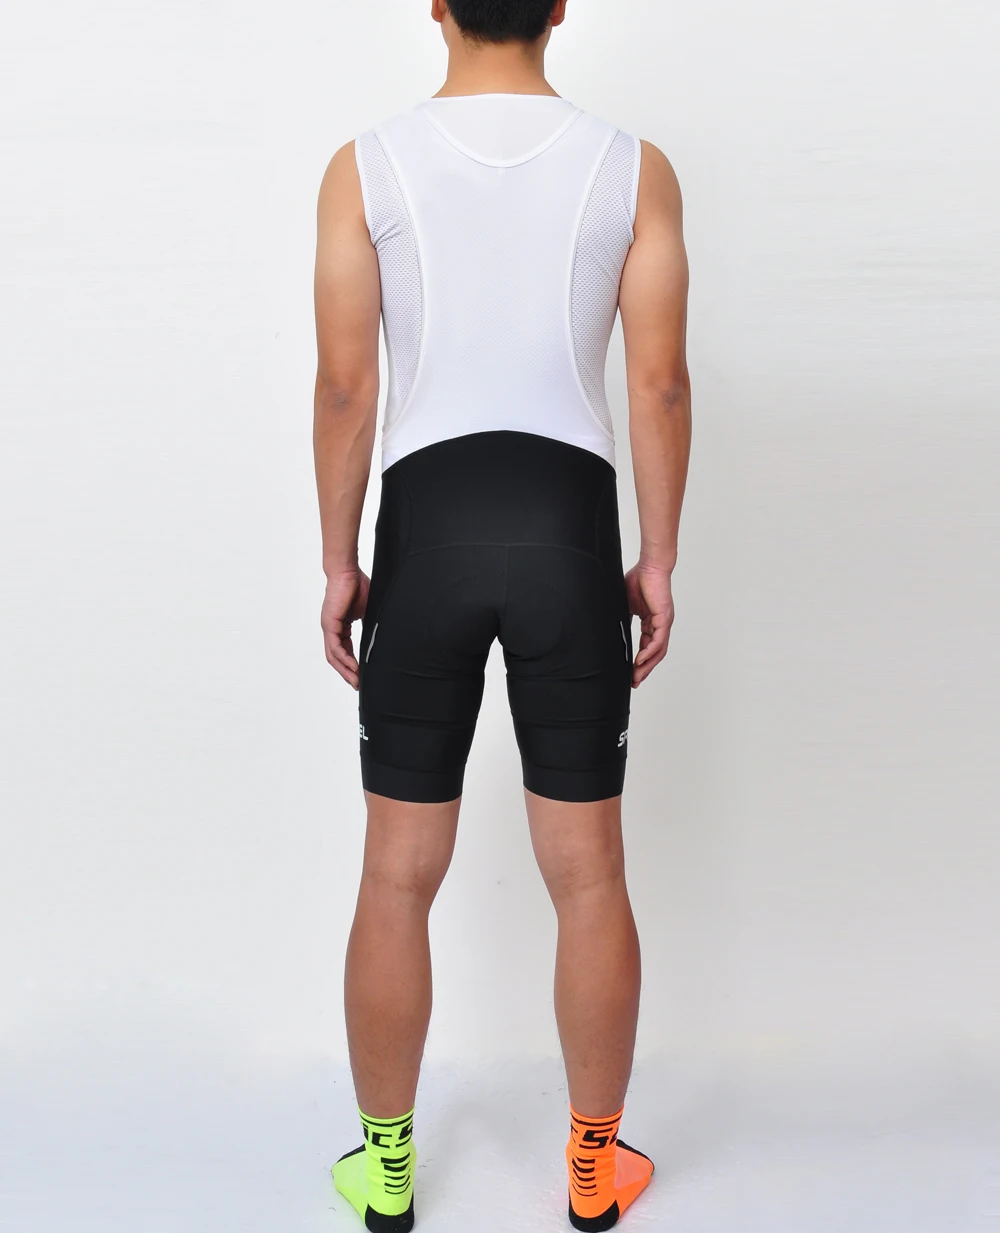 Просто Обновление SPEXCEL Superlight Pro Team базовый слой без рукавов Велосипедное нижнее белье быстросохнущая дорожная рубашка для мужчин и женщин сетка под рубашкой